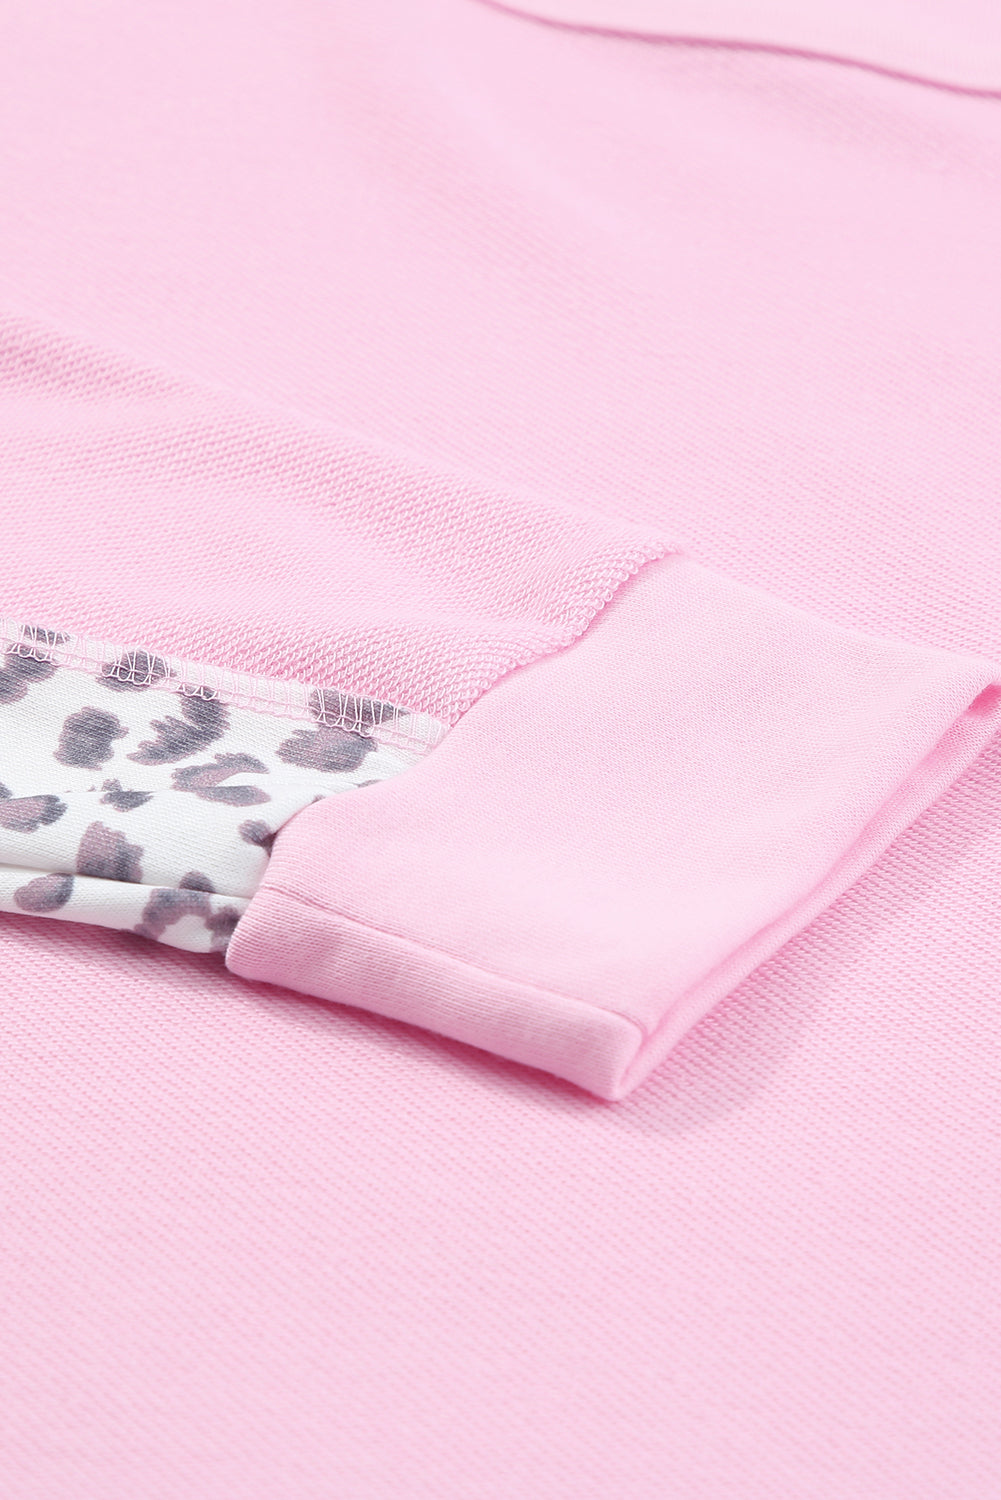 Rožnata majica velike velikosti z leopardjim spojem z izpostavljenimi šivi